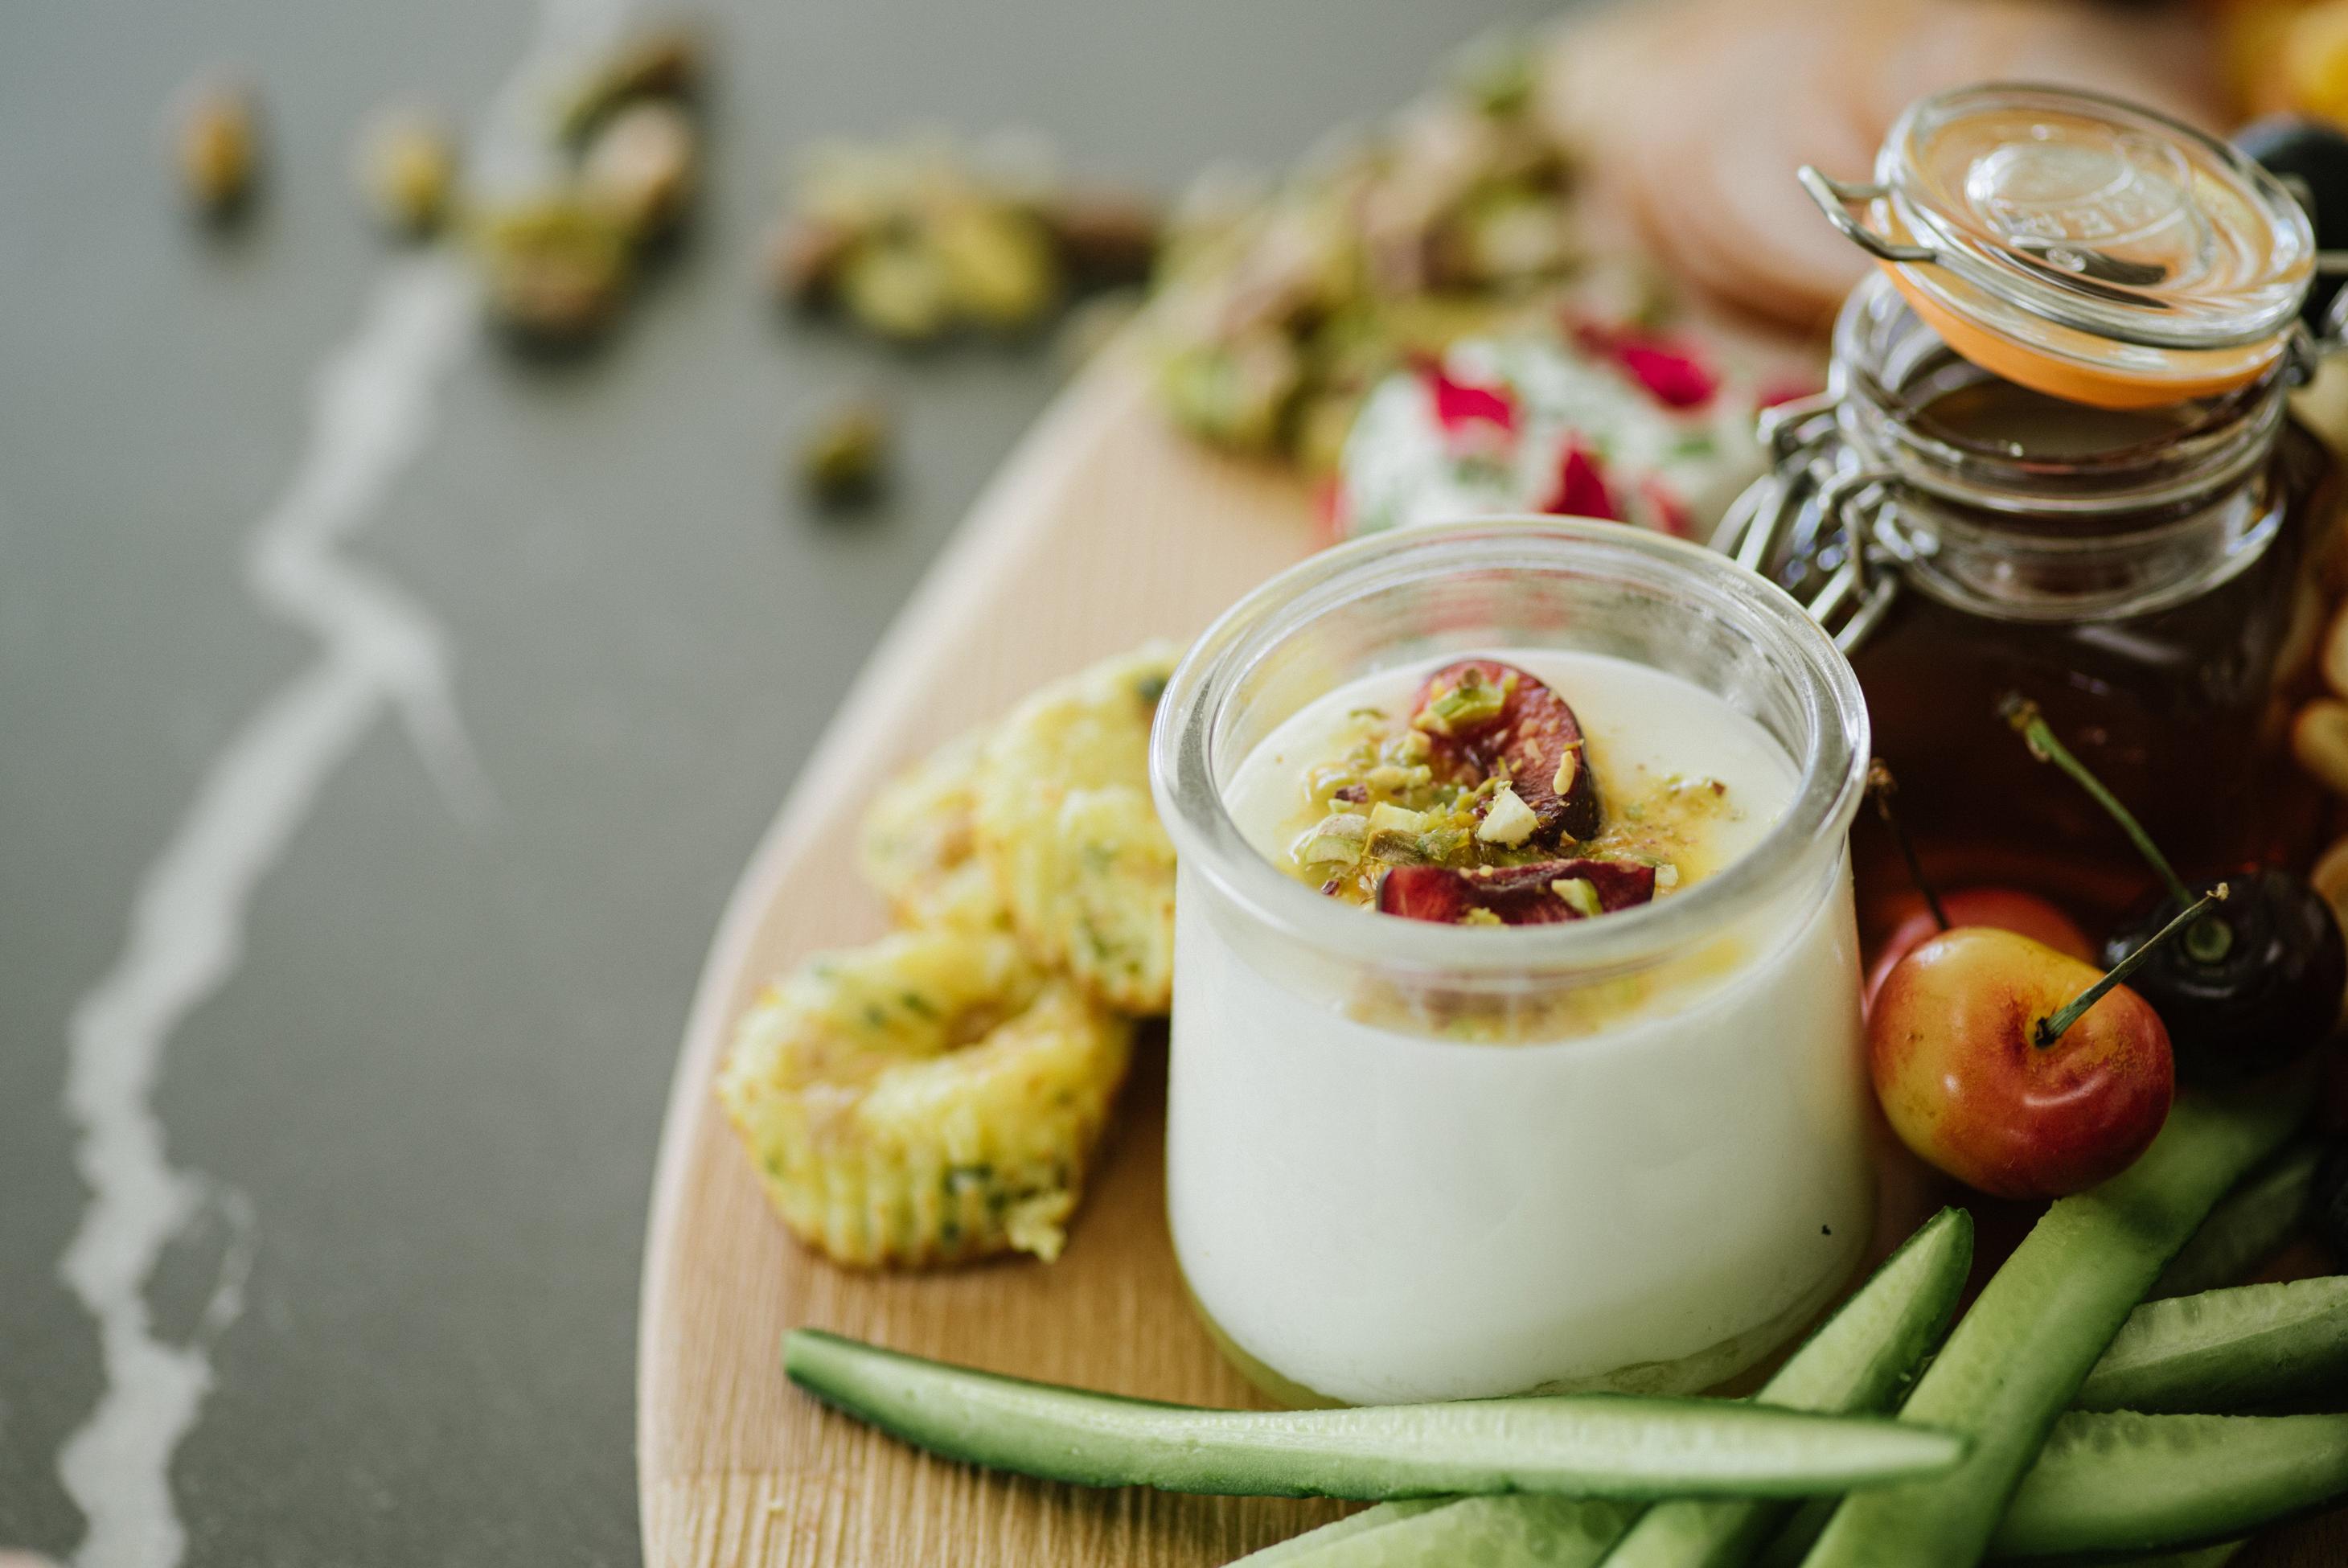 L'importanza dello yogurt nella cucina mediterranea e come base per antipasti leggeri e salutari